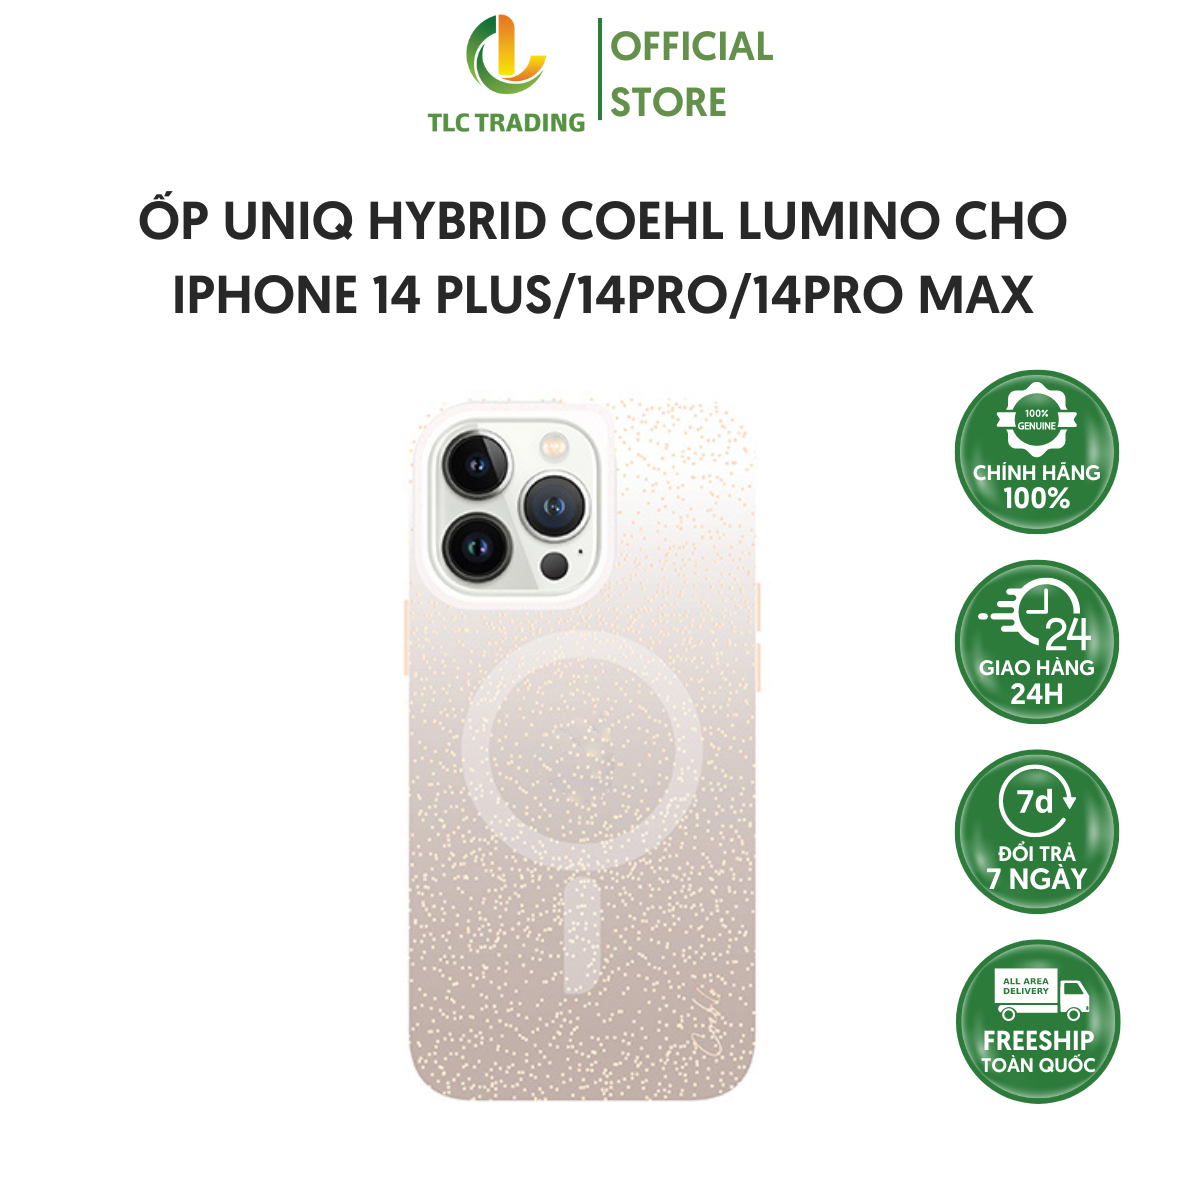 Ốp UNIQ Hybrid Coehl Lumino dành cho iPhone 14/ 14 Plus/ 14 Pro/ 14 Pro Max - Hàng chính hãng